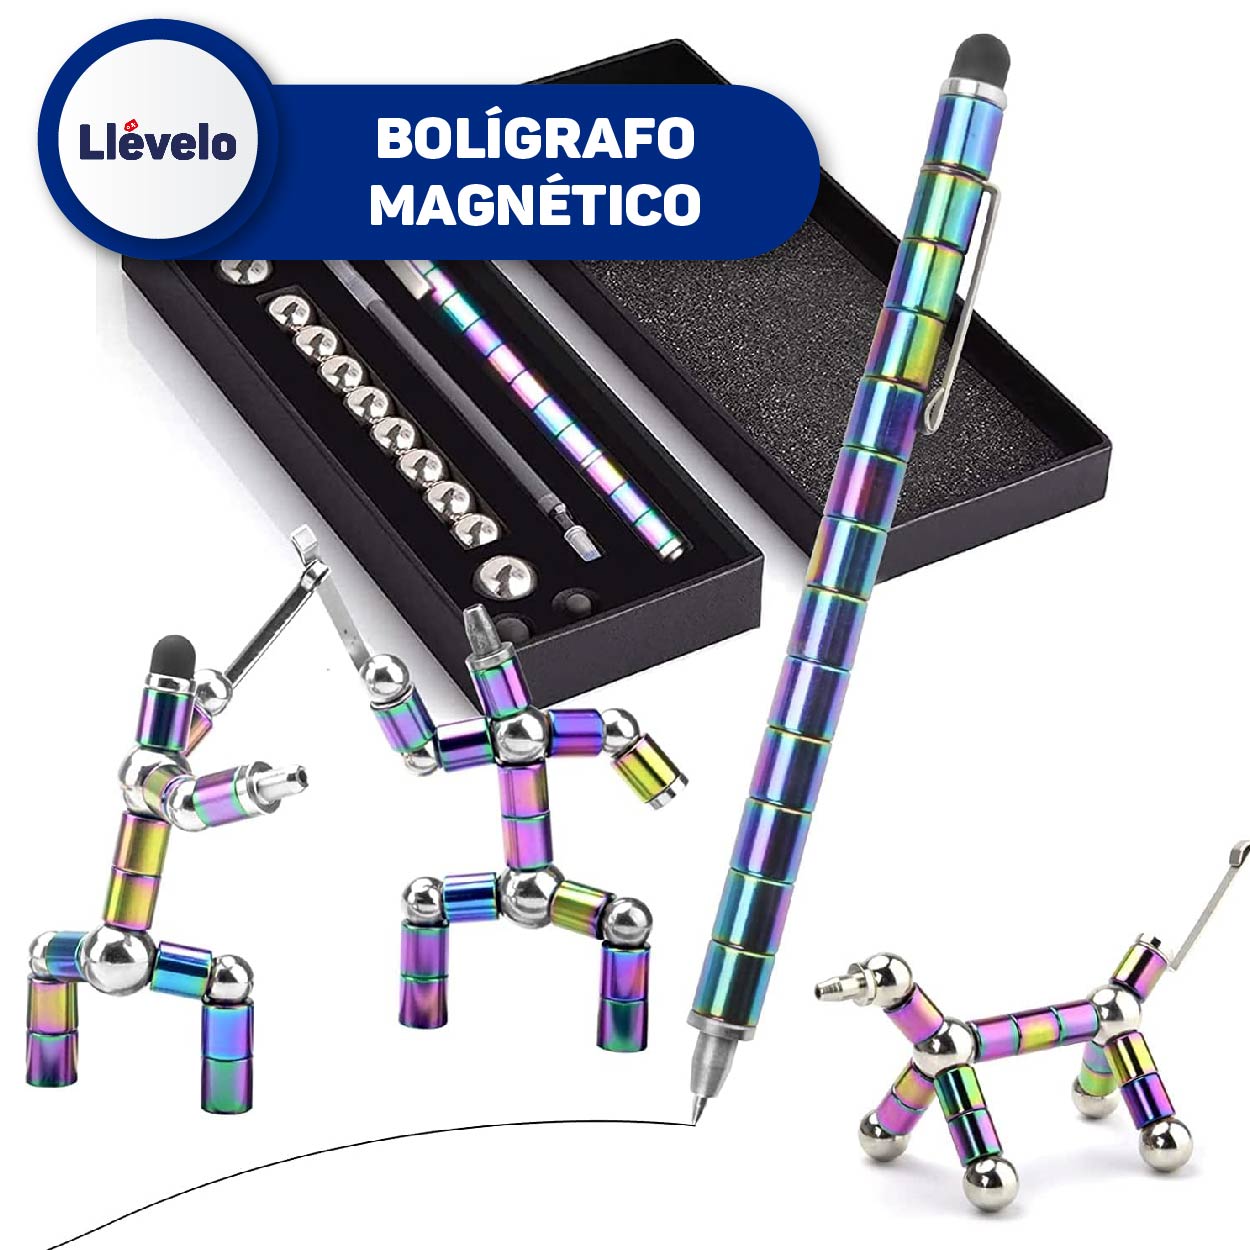 Bolígrafo magnético reutilizable para colocar en cualquier